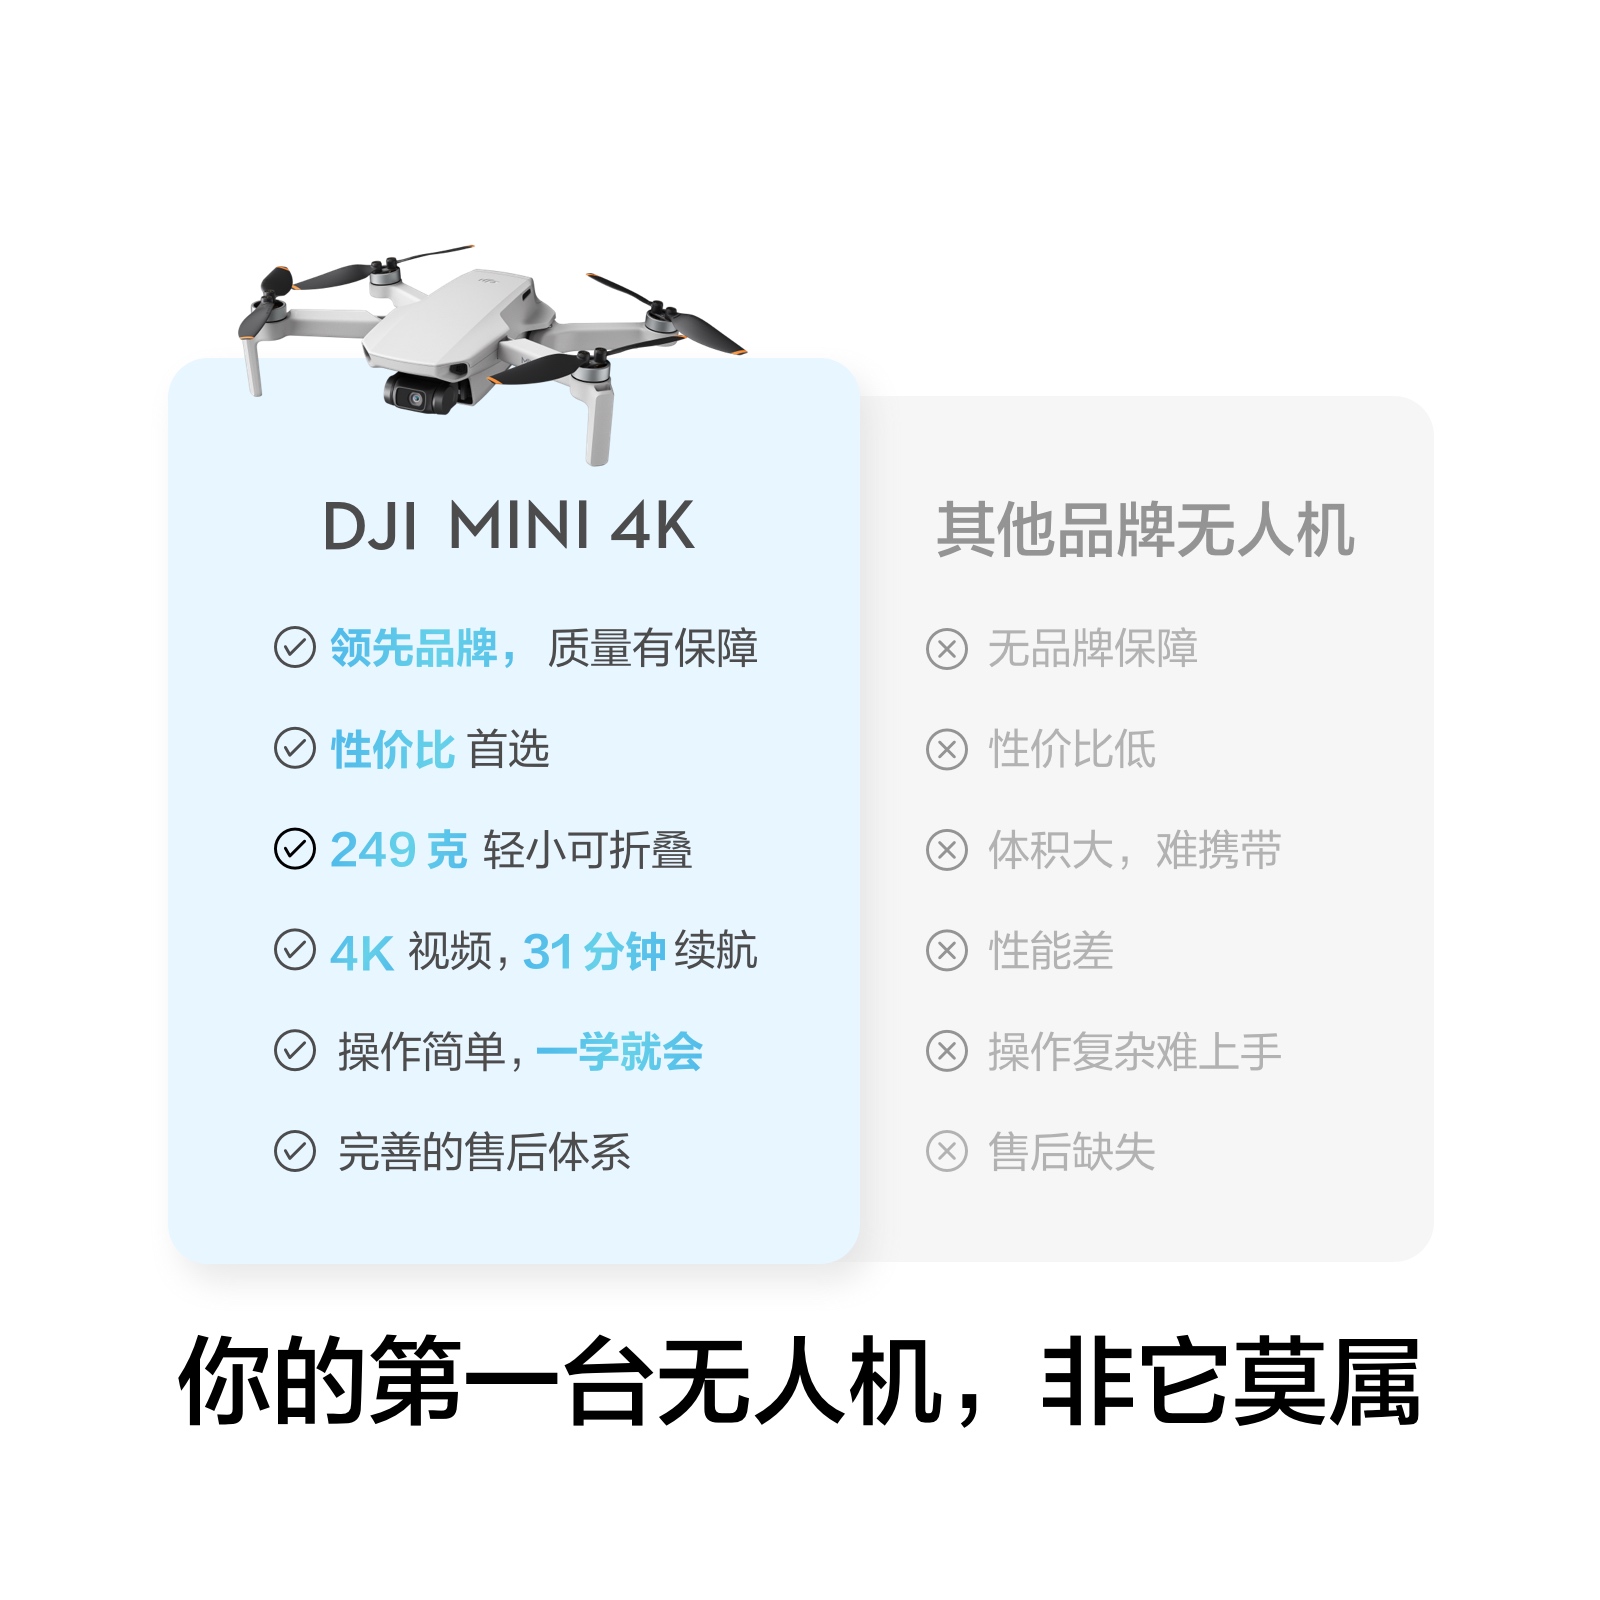 大疆 DJI Mini 4K 超高清迷你航拍无人机 三轴机械增稳数字图传 新手入门级飞行相机 长续航智能拍摄遥控飞机